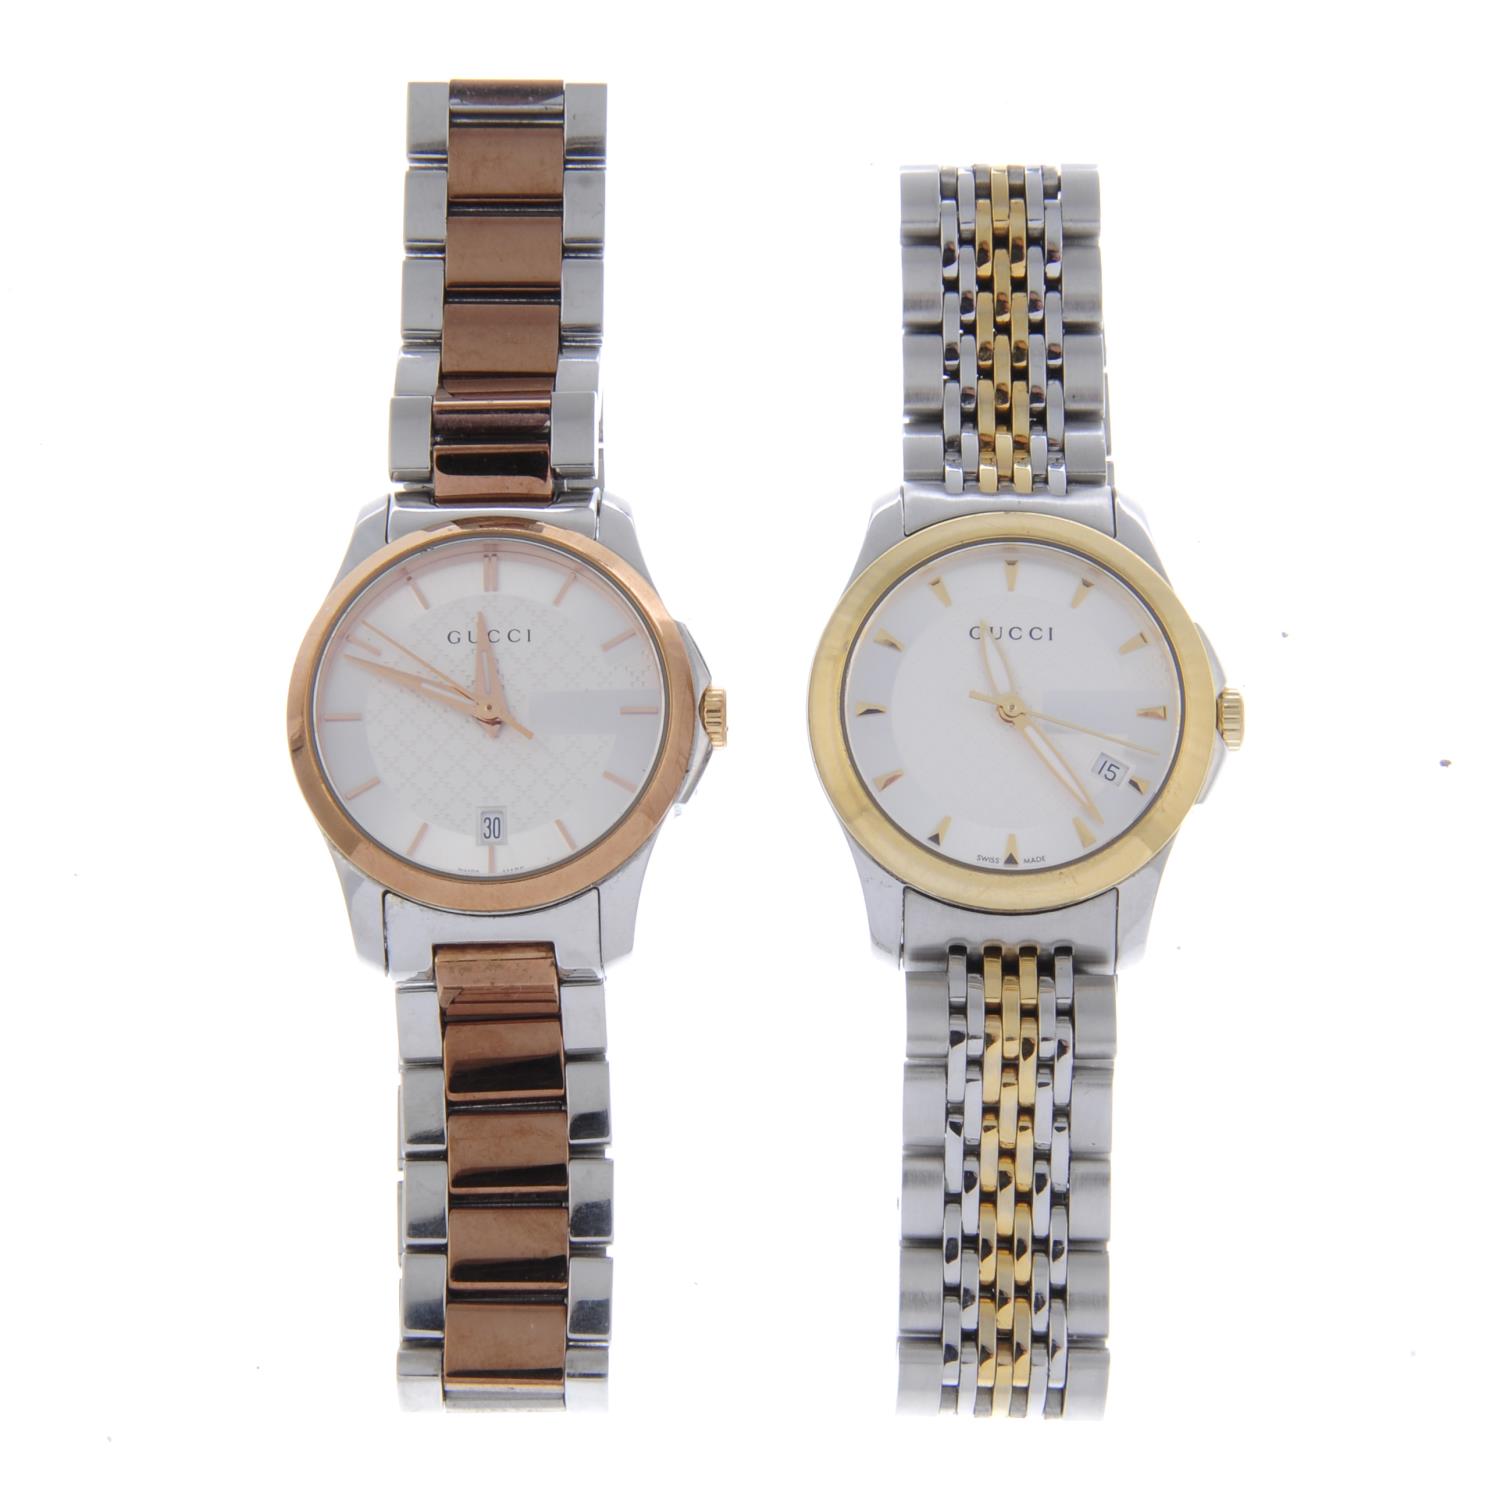 GUCCI - a lady's G-Timeless bracelet watch. - Image 2 of 2